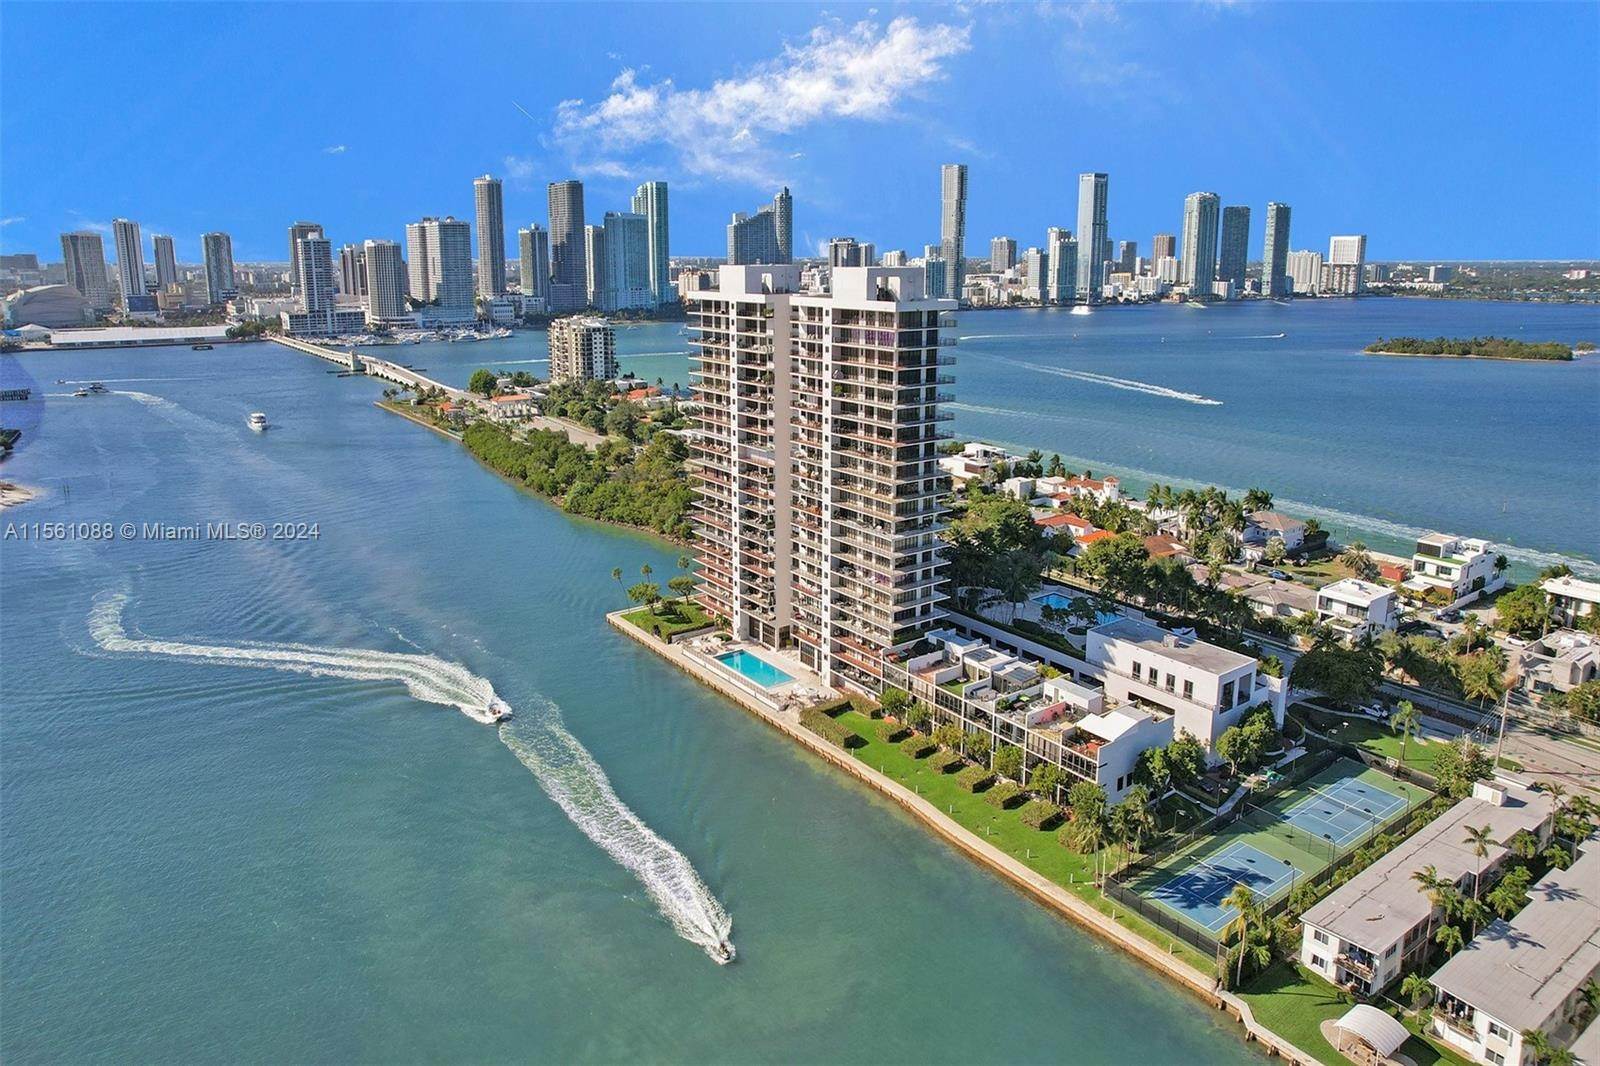 公寓 / 聯排別墅 為 出售 在 Miami, FL 33139